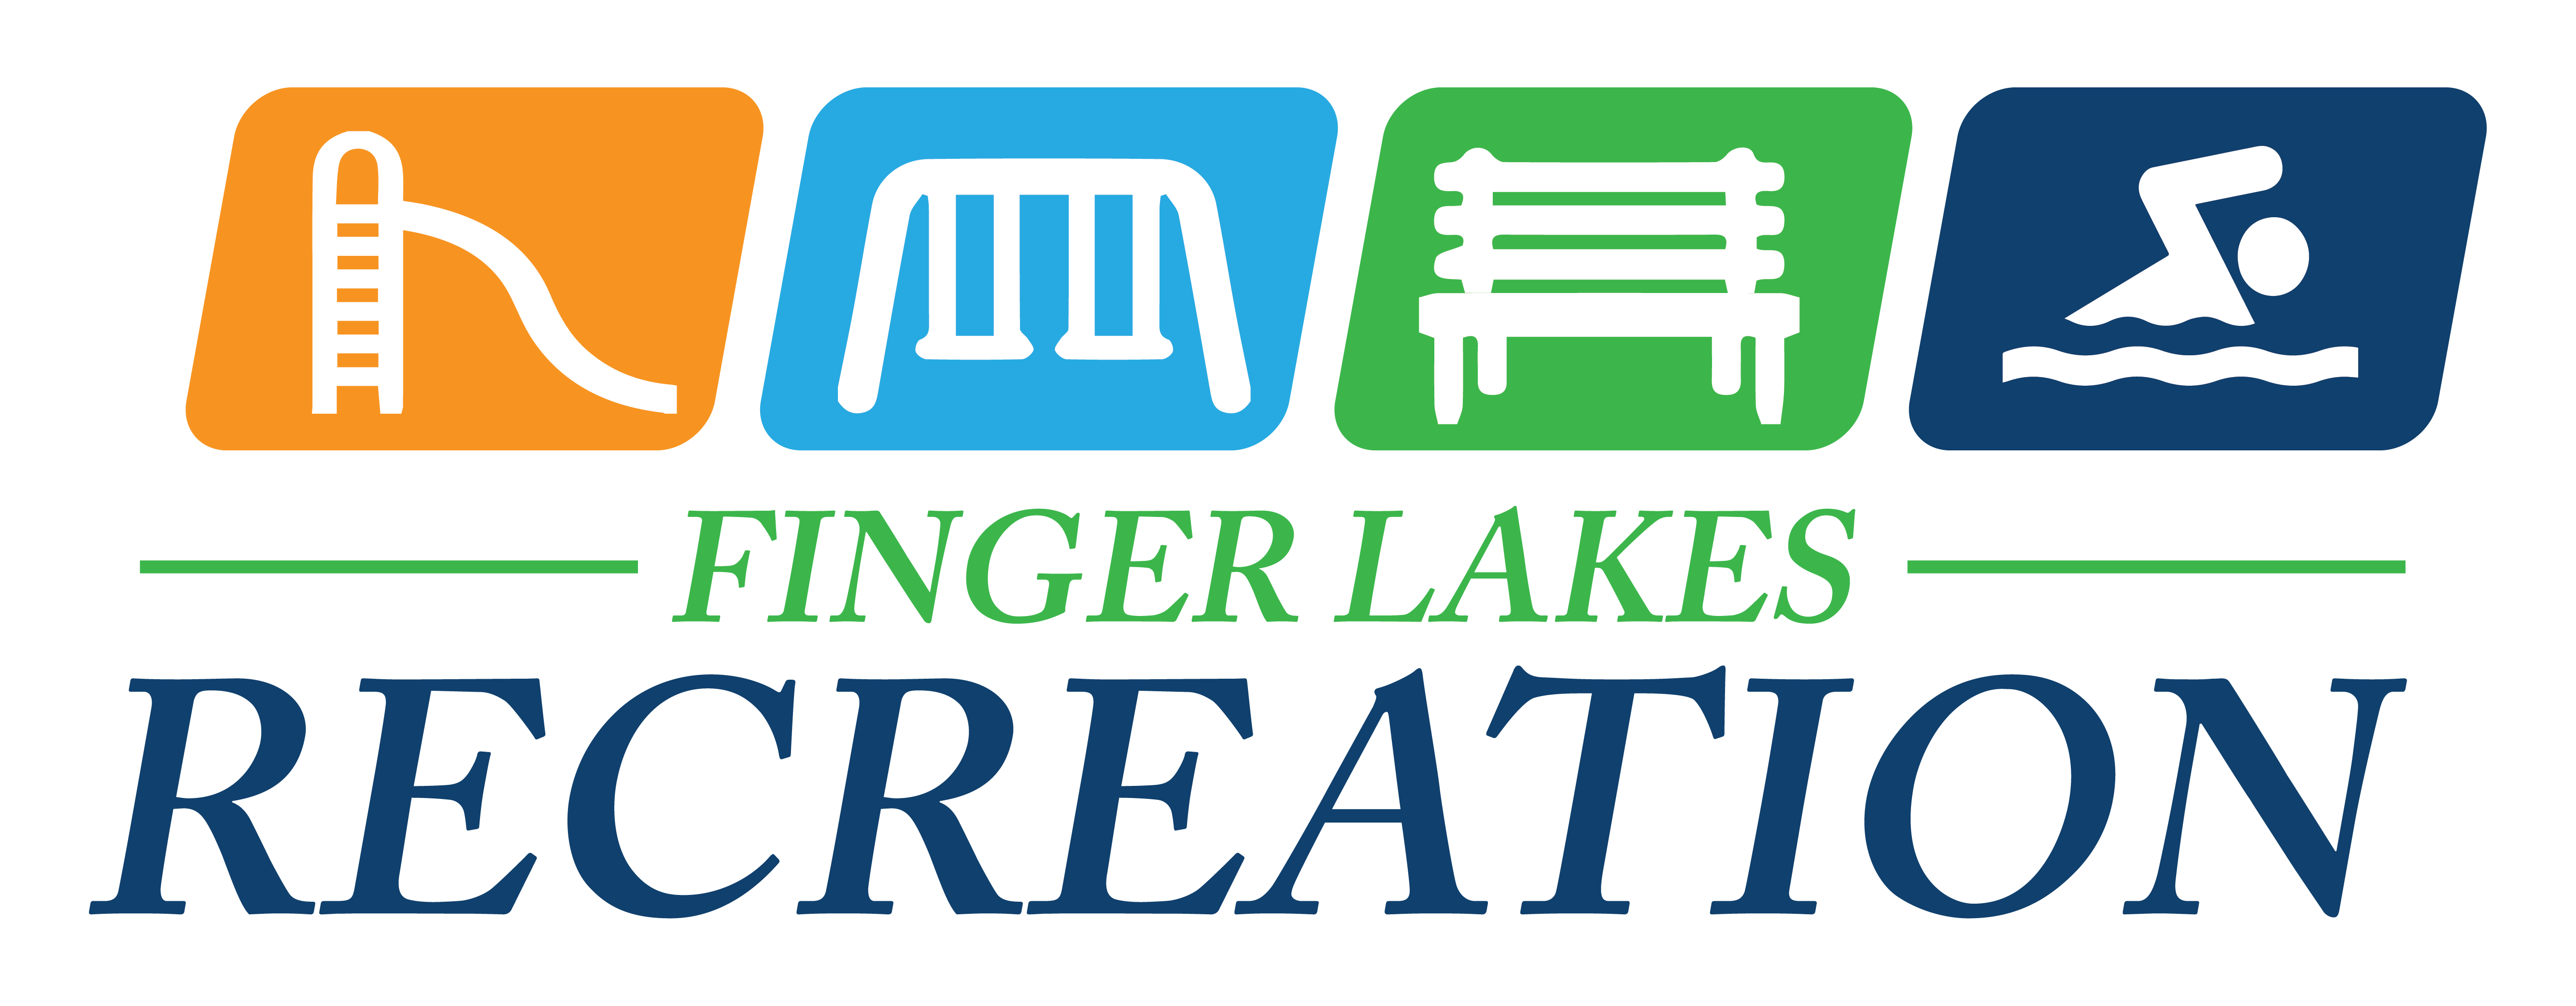 Finger Lakes Recreation